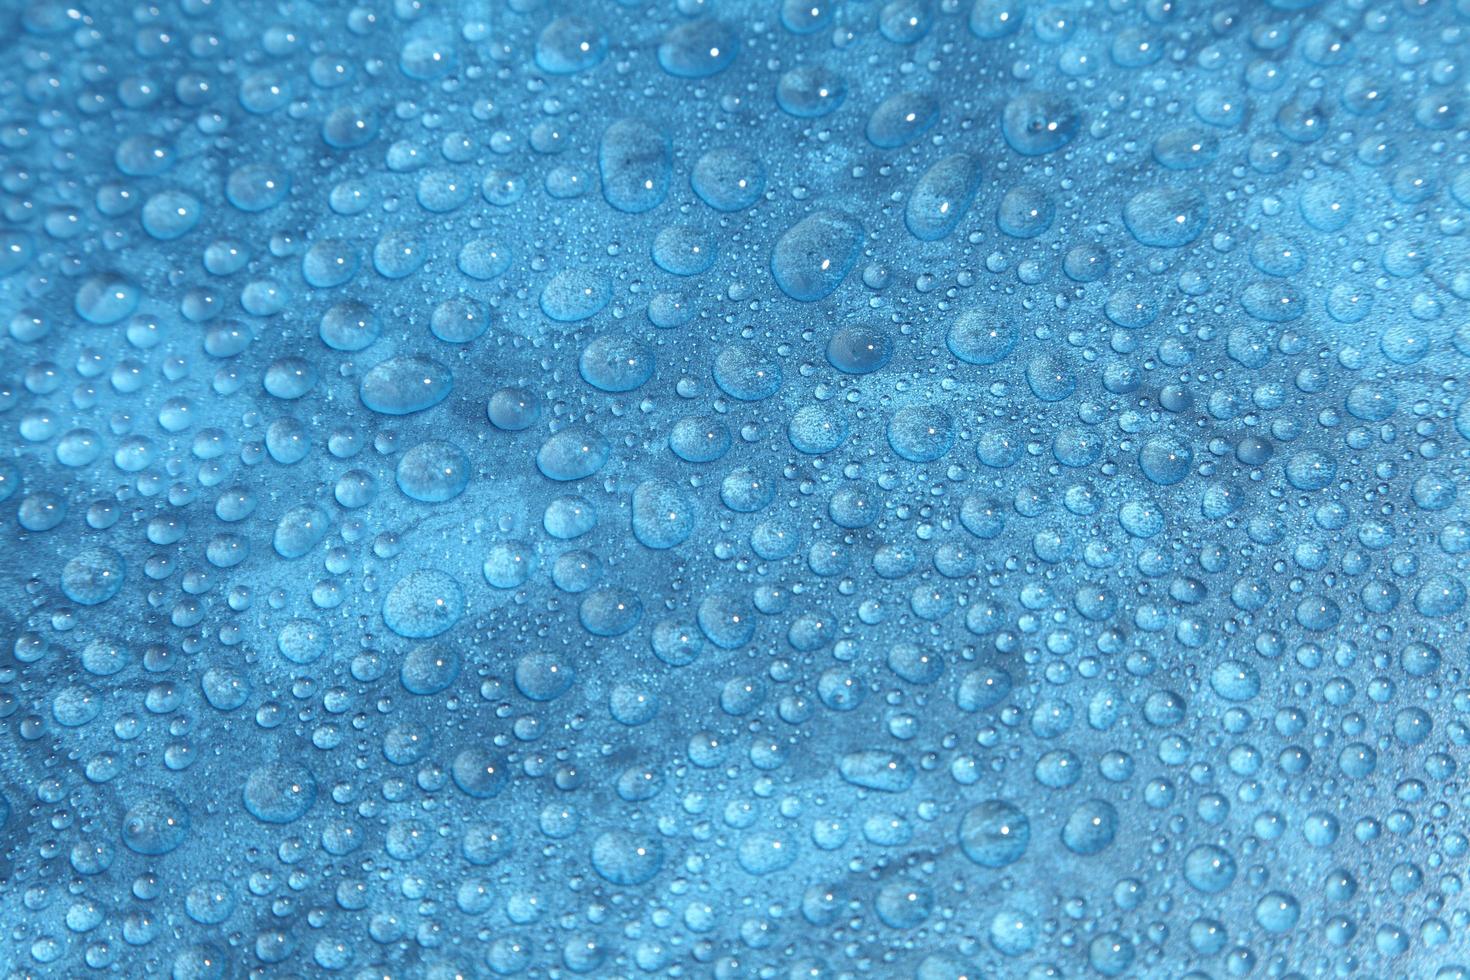 close-up gotas de água em fundo azul foto